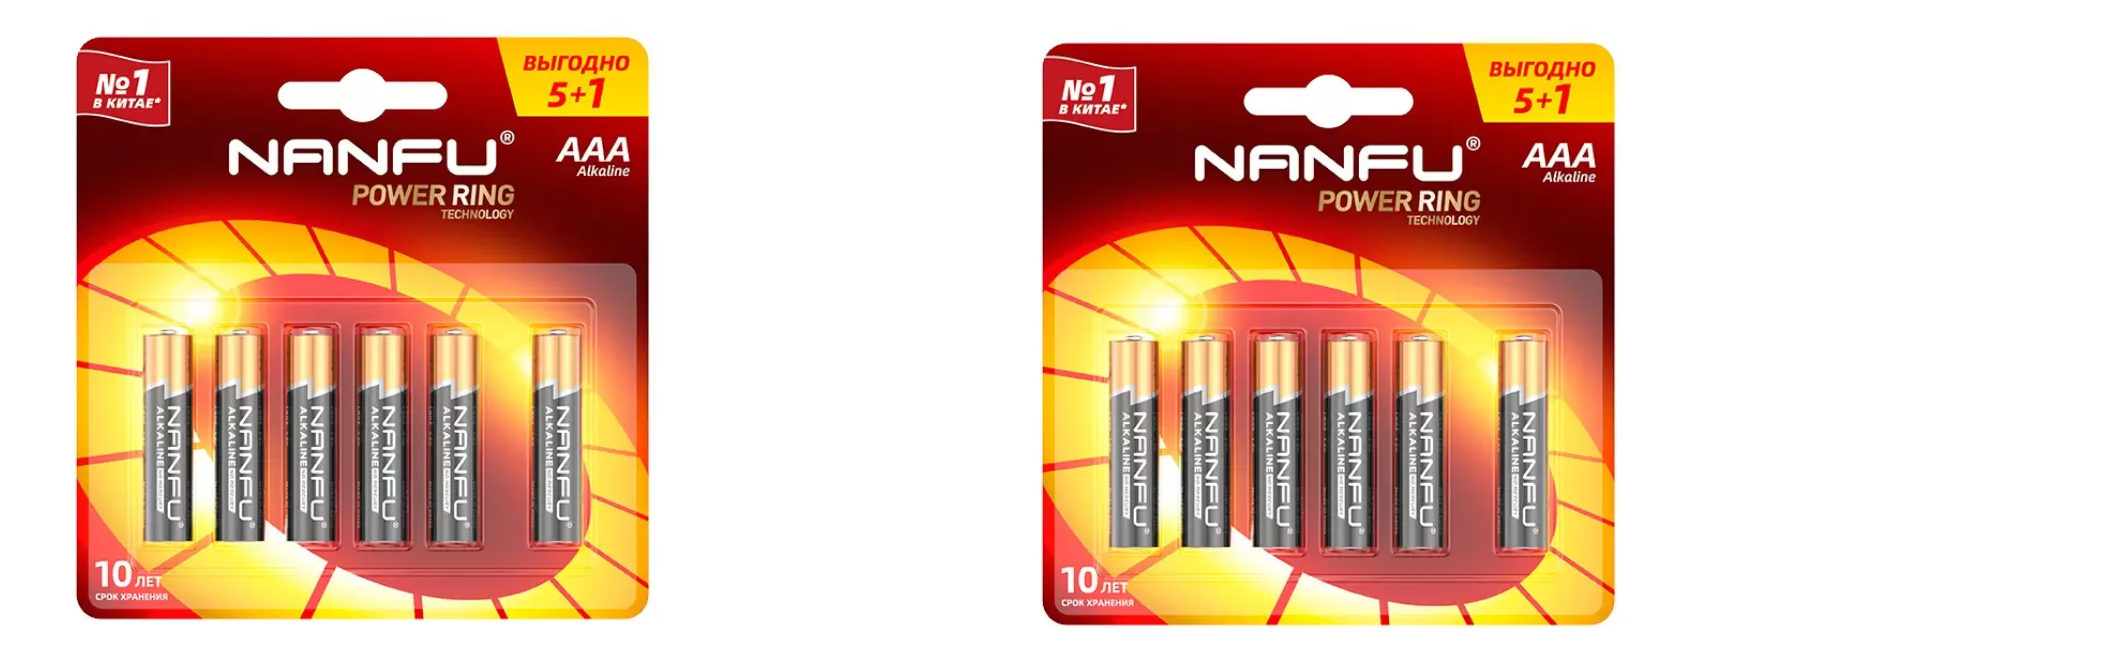 Батарейка Nanfu AAA (5+1шт.) (LR03 6B(5+1)), 2 уп